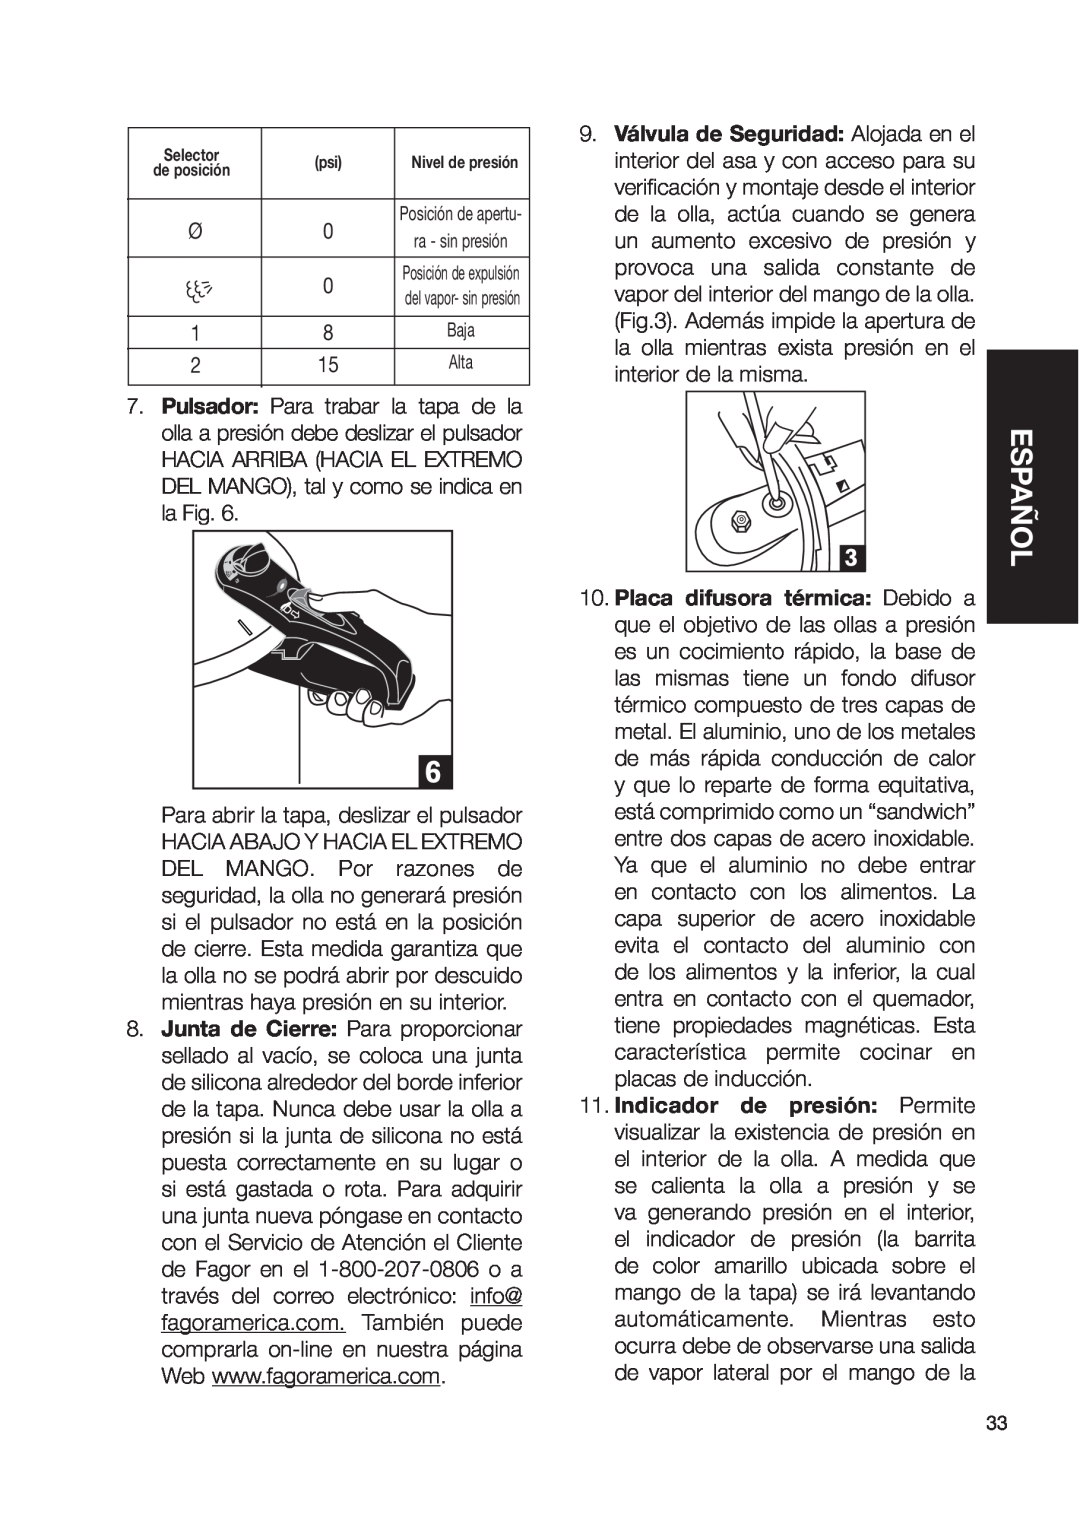 Fagor America fagor duo pressure cooker user manual Español, Para abrir la tapa, deslizar el pulsador 